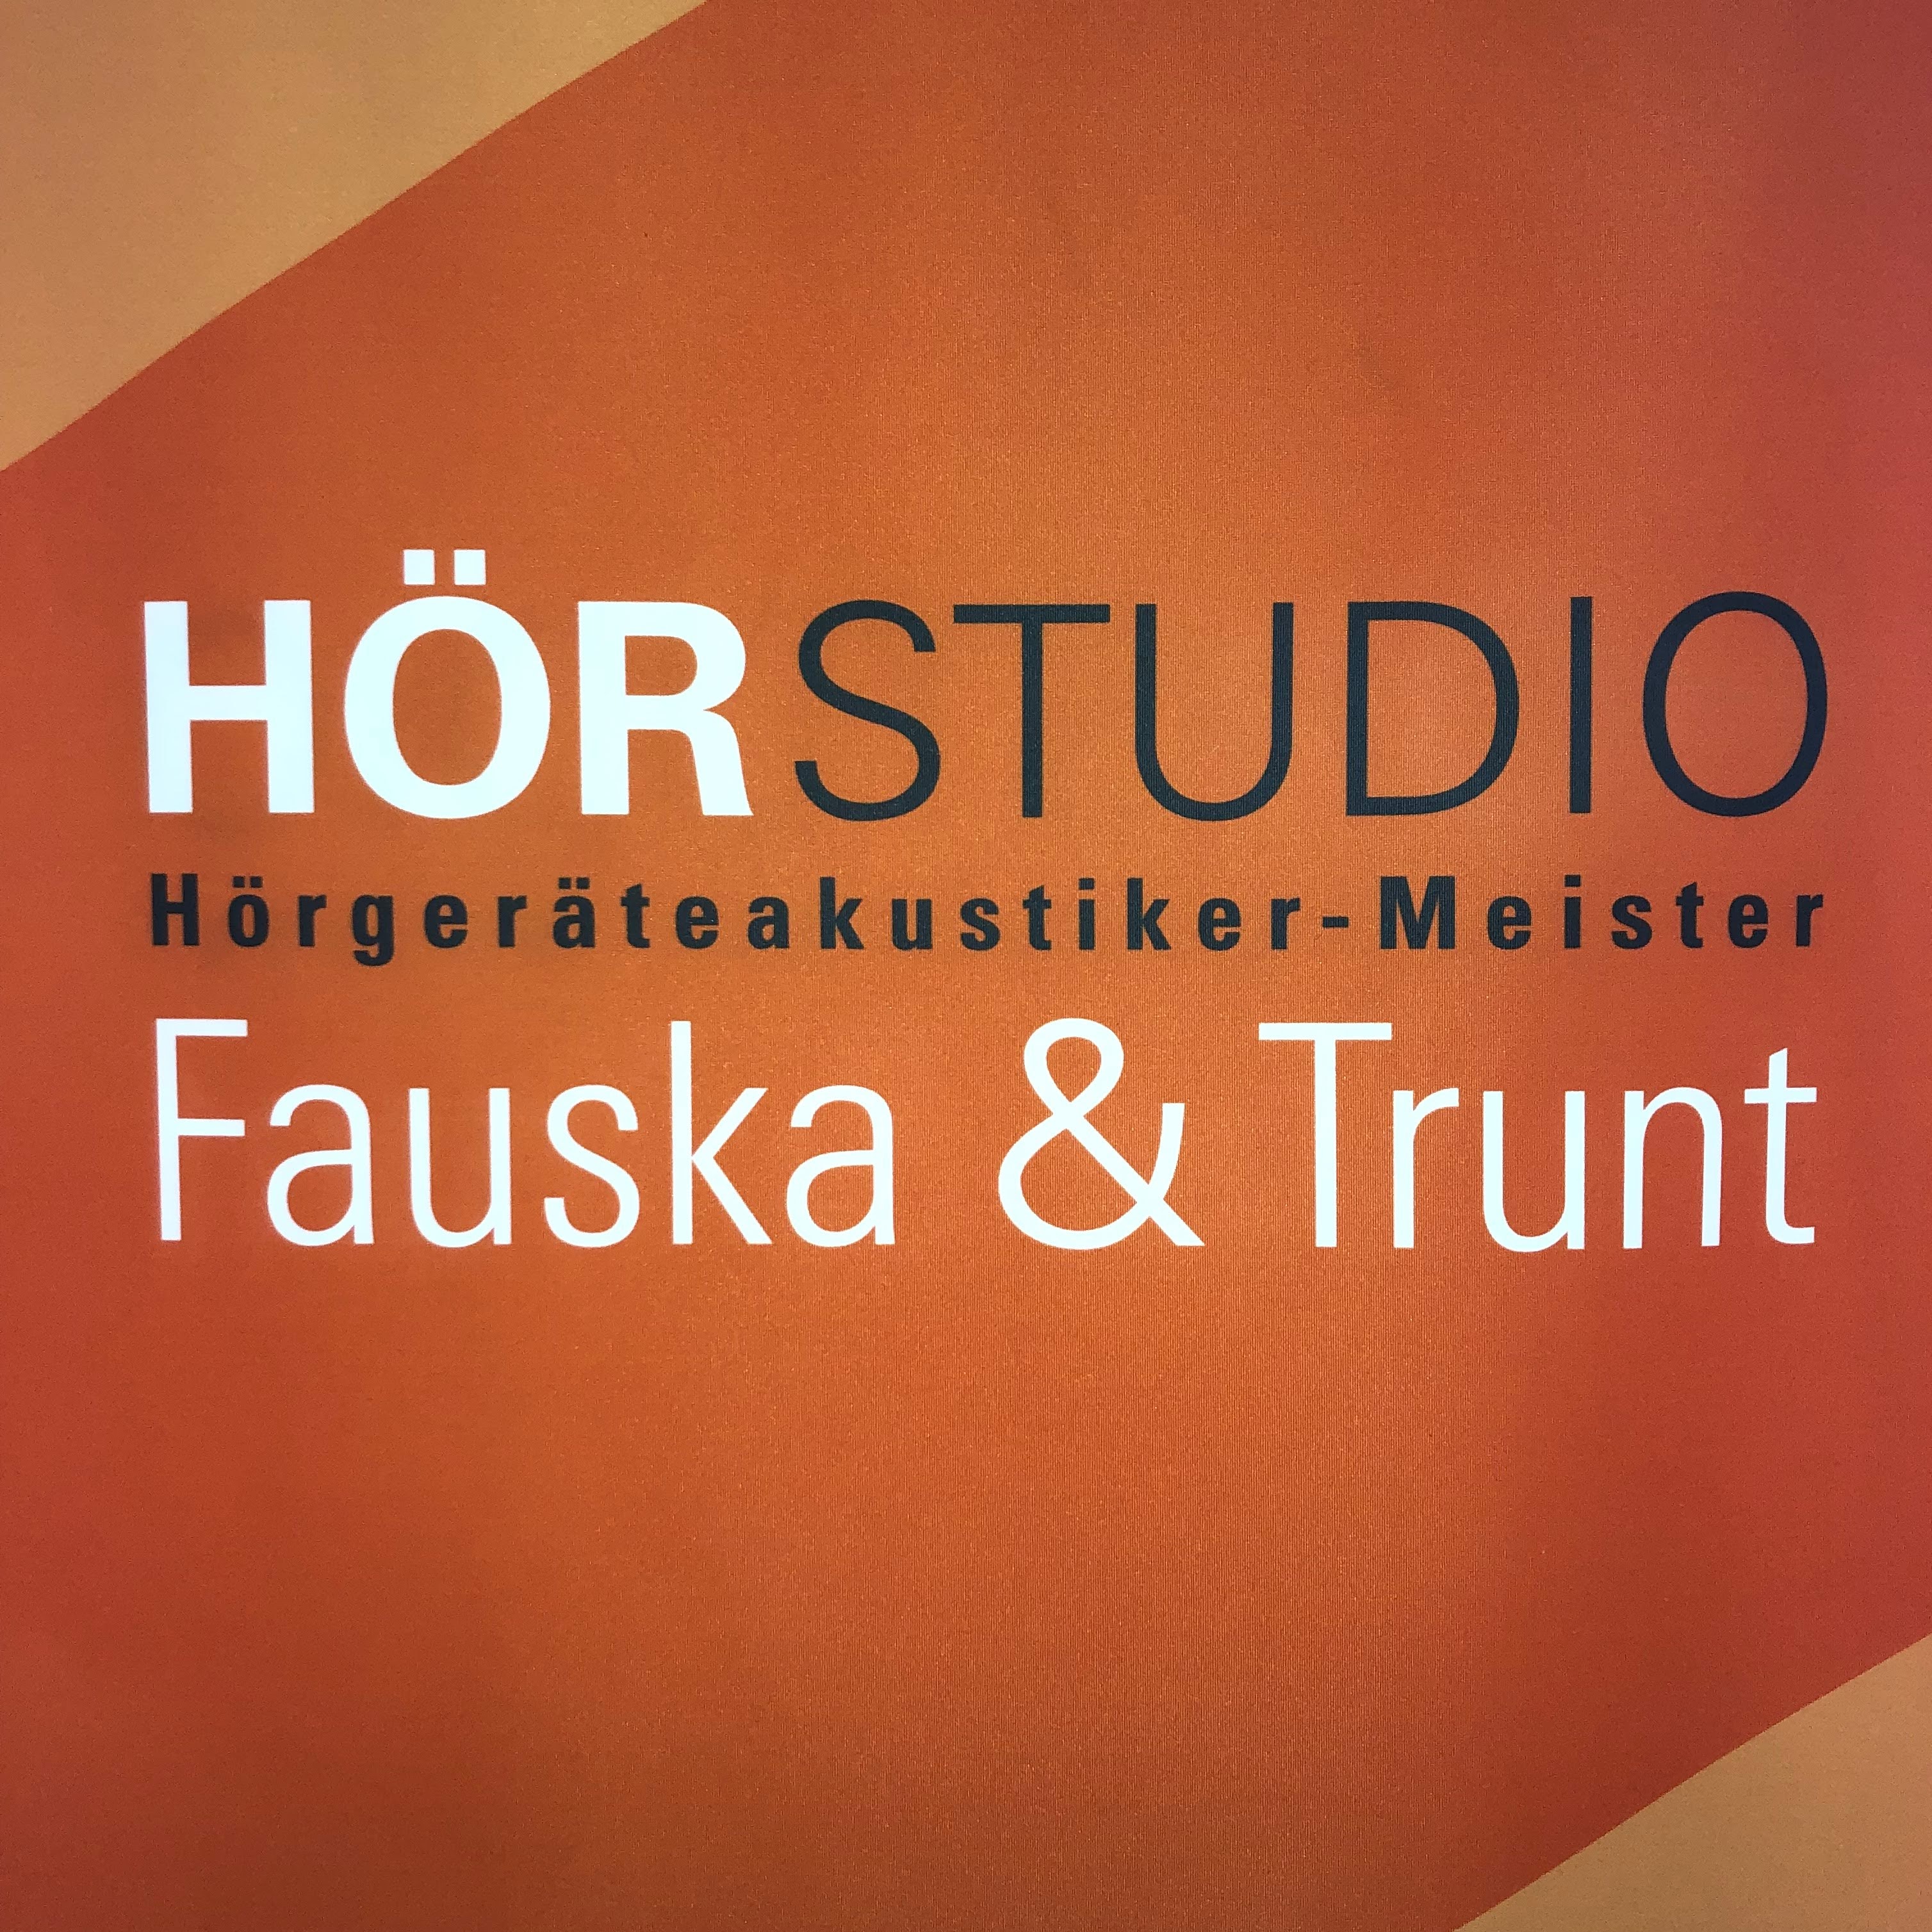 Hörstudio Fauska & Trunt GmbH logo